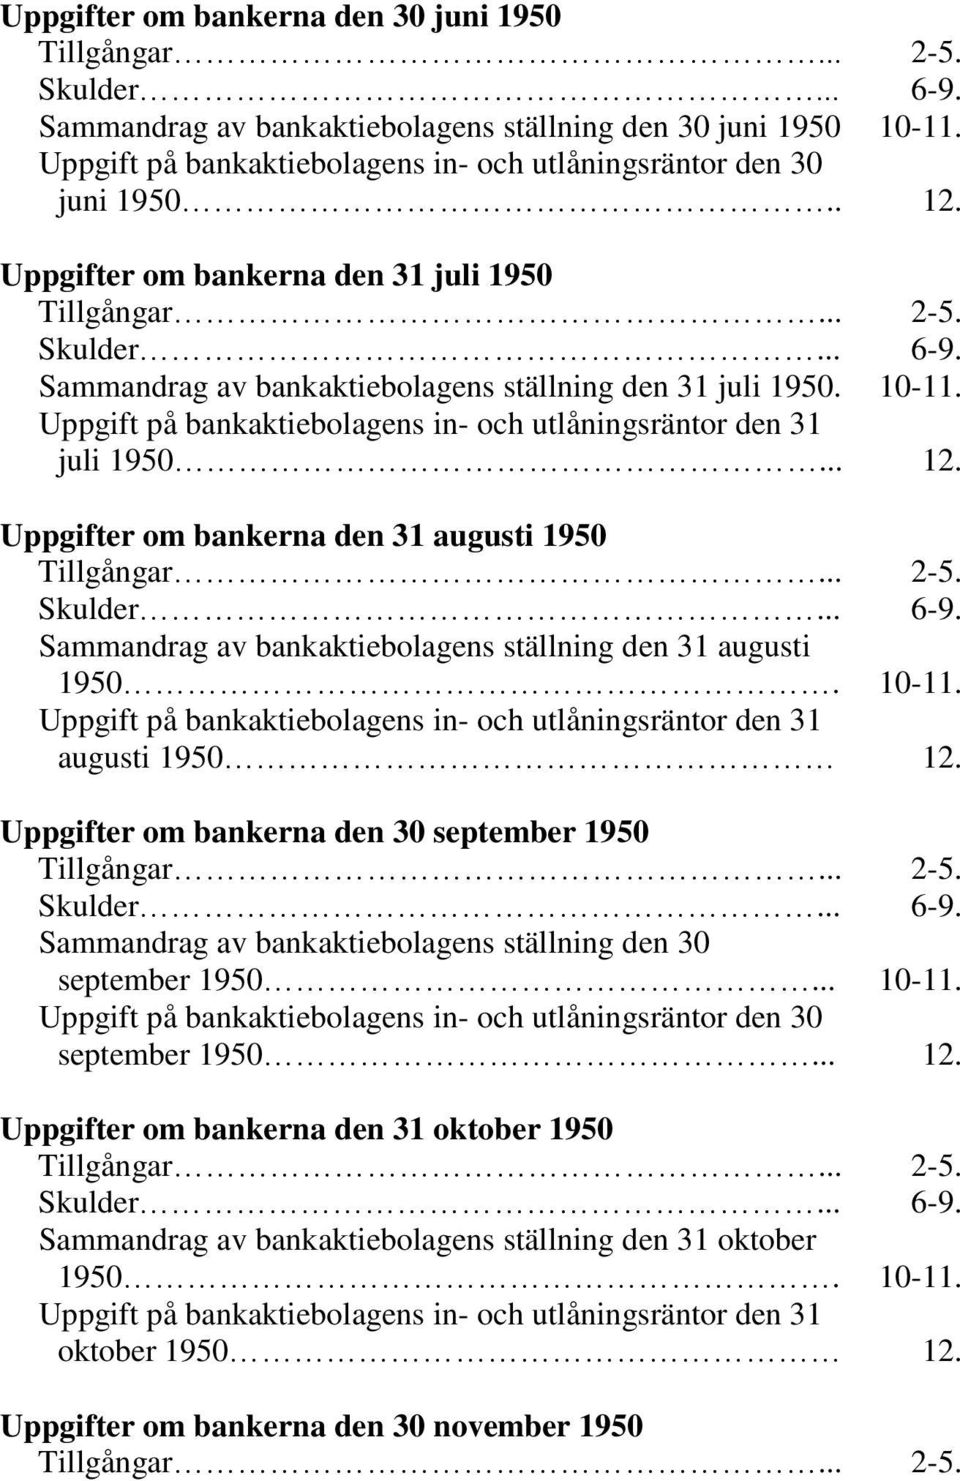 Sammandrag av bankaktiebolagens ställning den 31 juli 1950. 10-11. Uppgift på bankaktiebolagens in- och utlåningsräntor den 31 juli 1950... 12. Uppgifter om bankerna den 31 augusti 1950 Tillgångar.